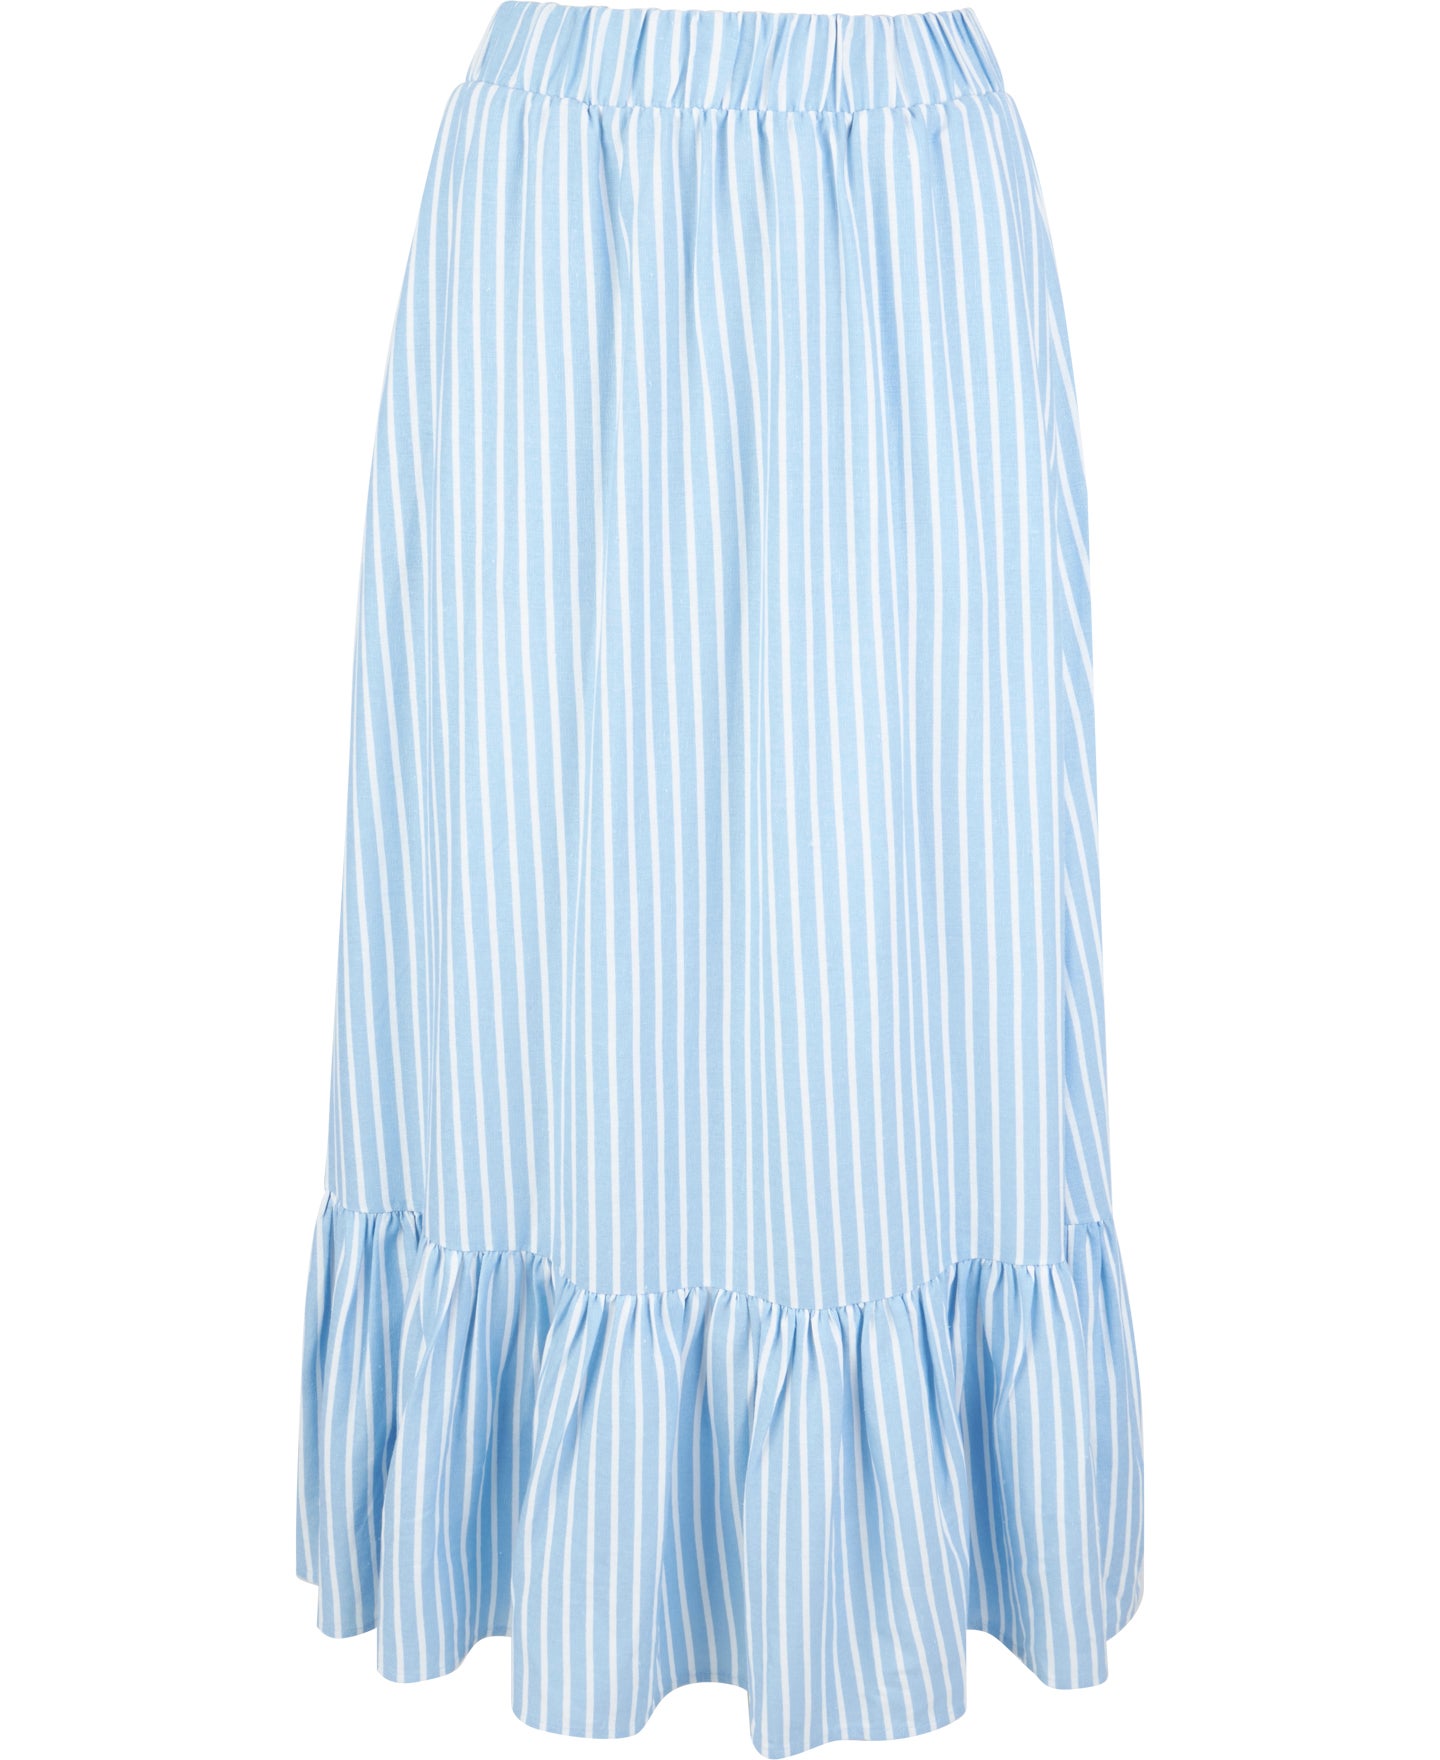 Linen Maxi Skirt/linen Skirt/light Blue Skirt/summer Maxi Skirt/long Blue  Skirt/skirt With Pockets/elastic Waist Skirt/draped Skirt/fc1130 - Etsy